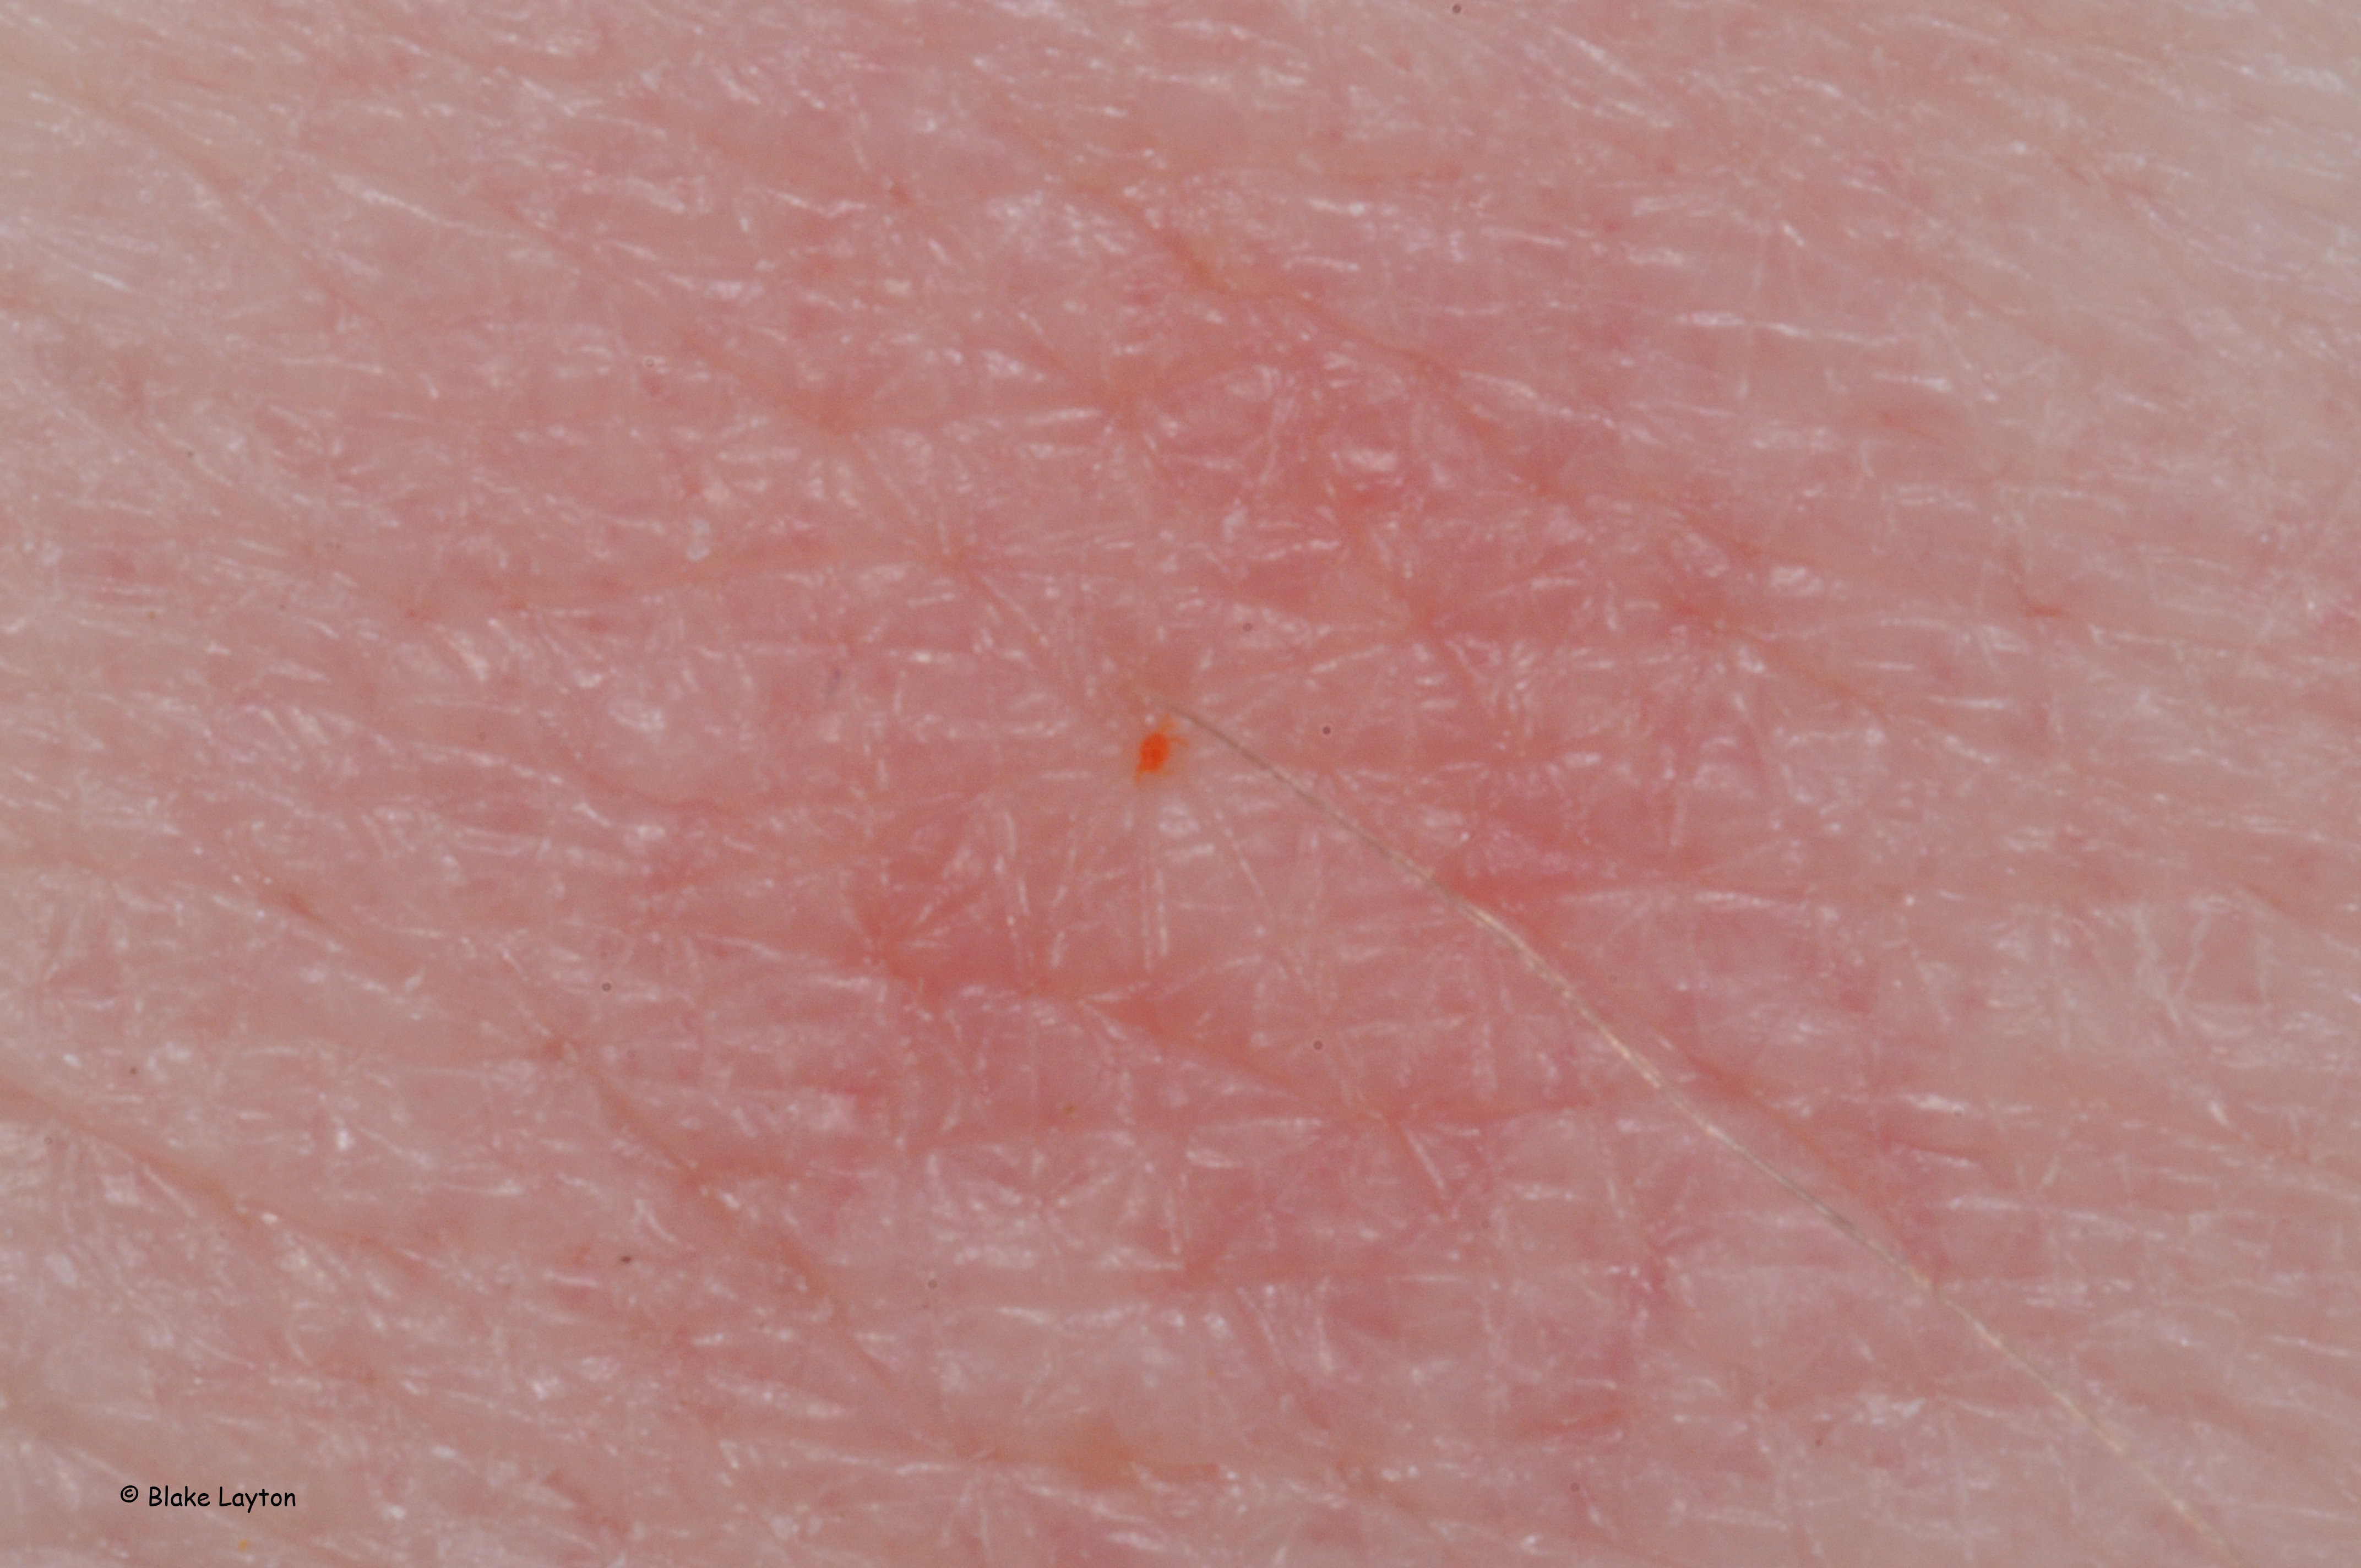 Red dot on skin.